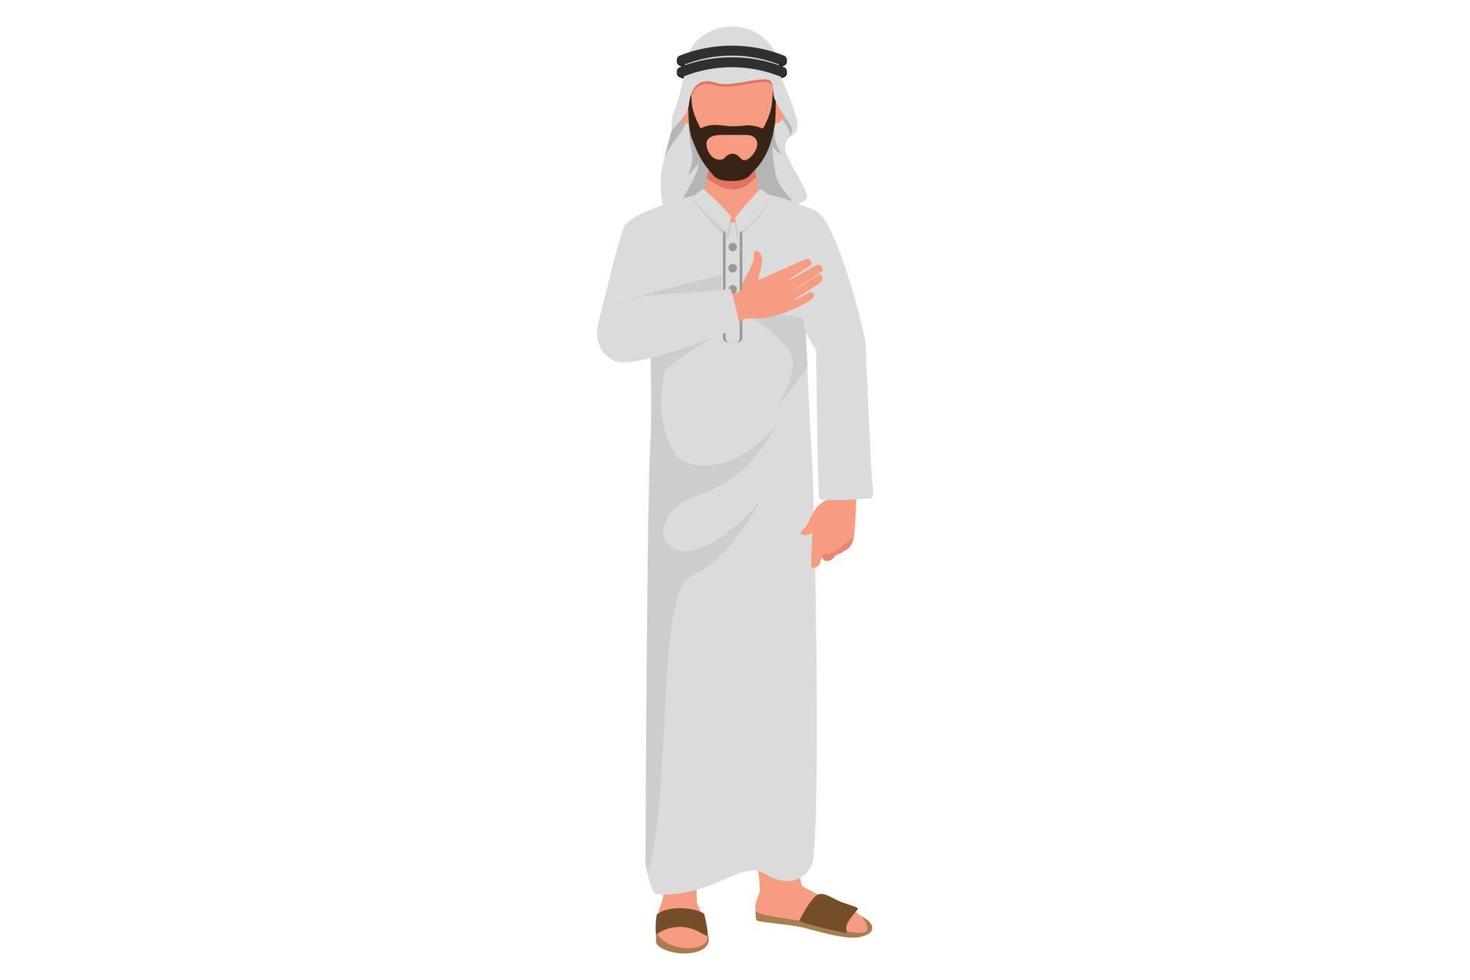 flacher karikaturstil des geschäfts, der angenehmen arabischen geschäftsmann zeichnet, hält hand auf brust, drückt dankbarkeit aus, dankbar für hilfe und unterstützung, zeigt herz voller liebe. Grafikdesign-Vektorillustration vektor